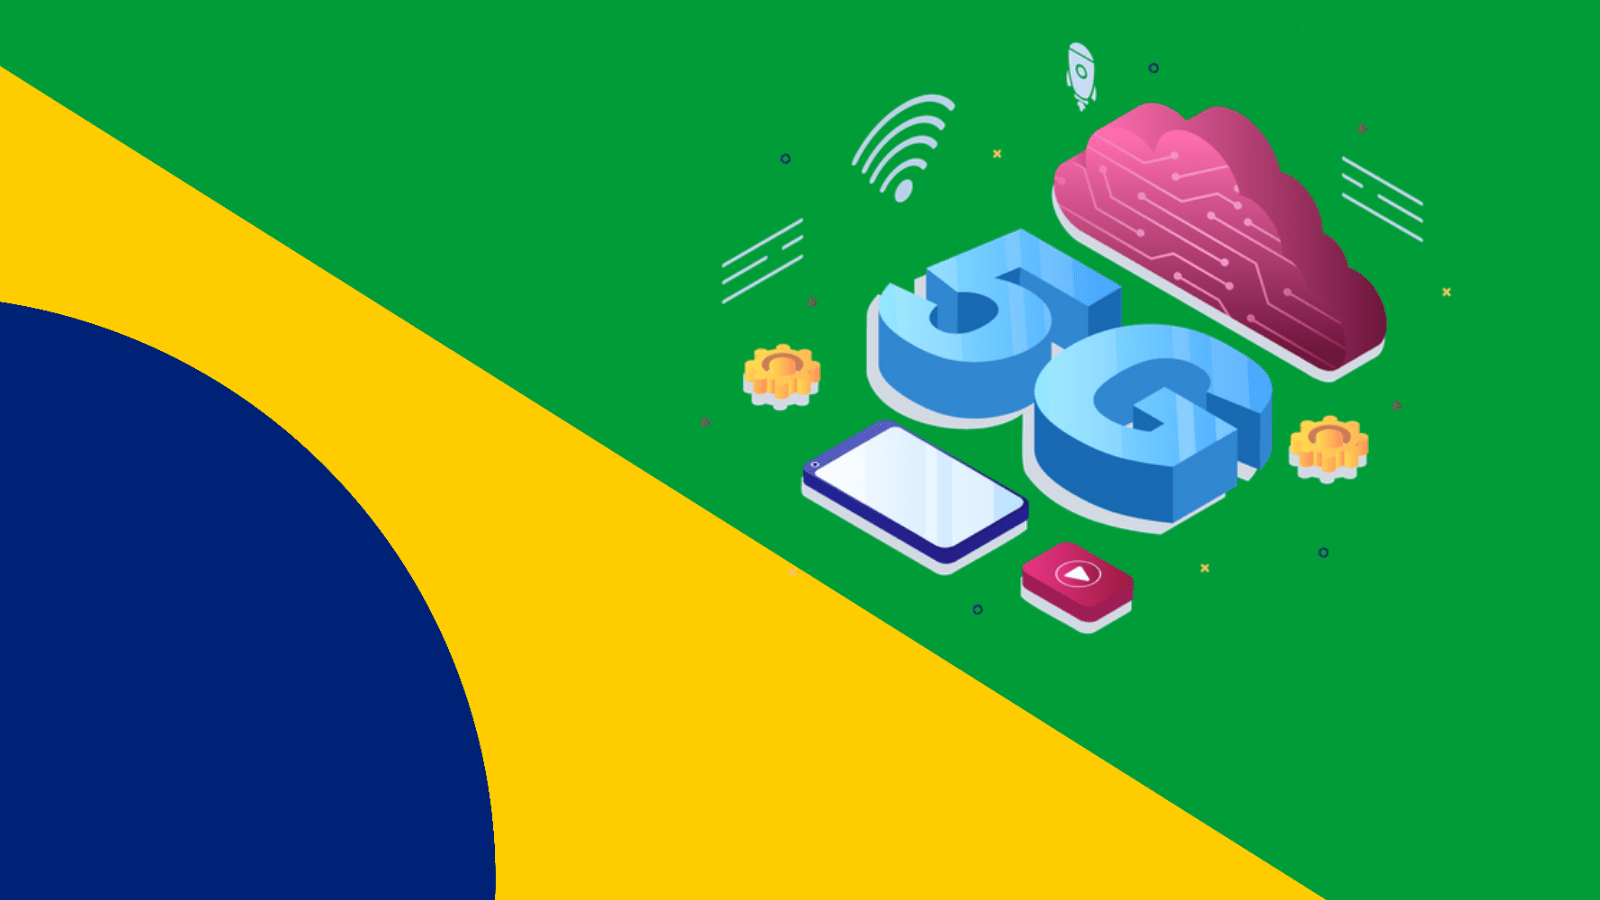 5g estreia no brasil hoje, veja celulares compatíveis